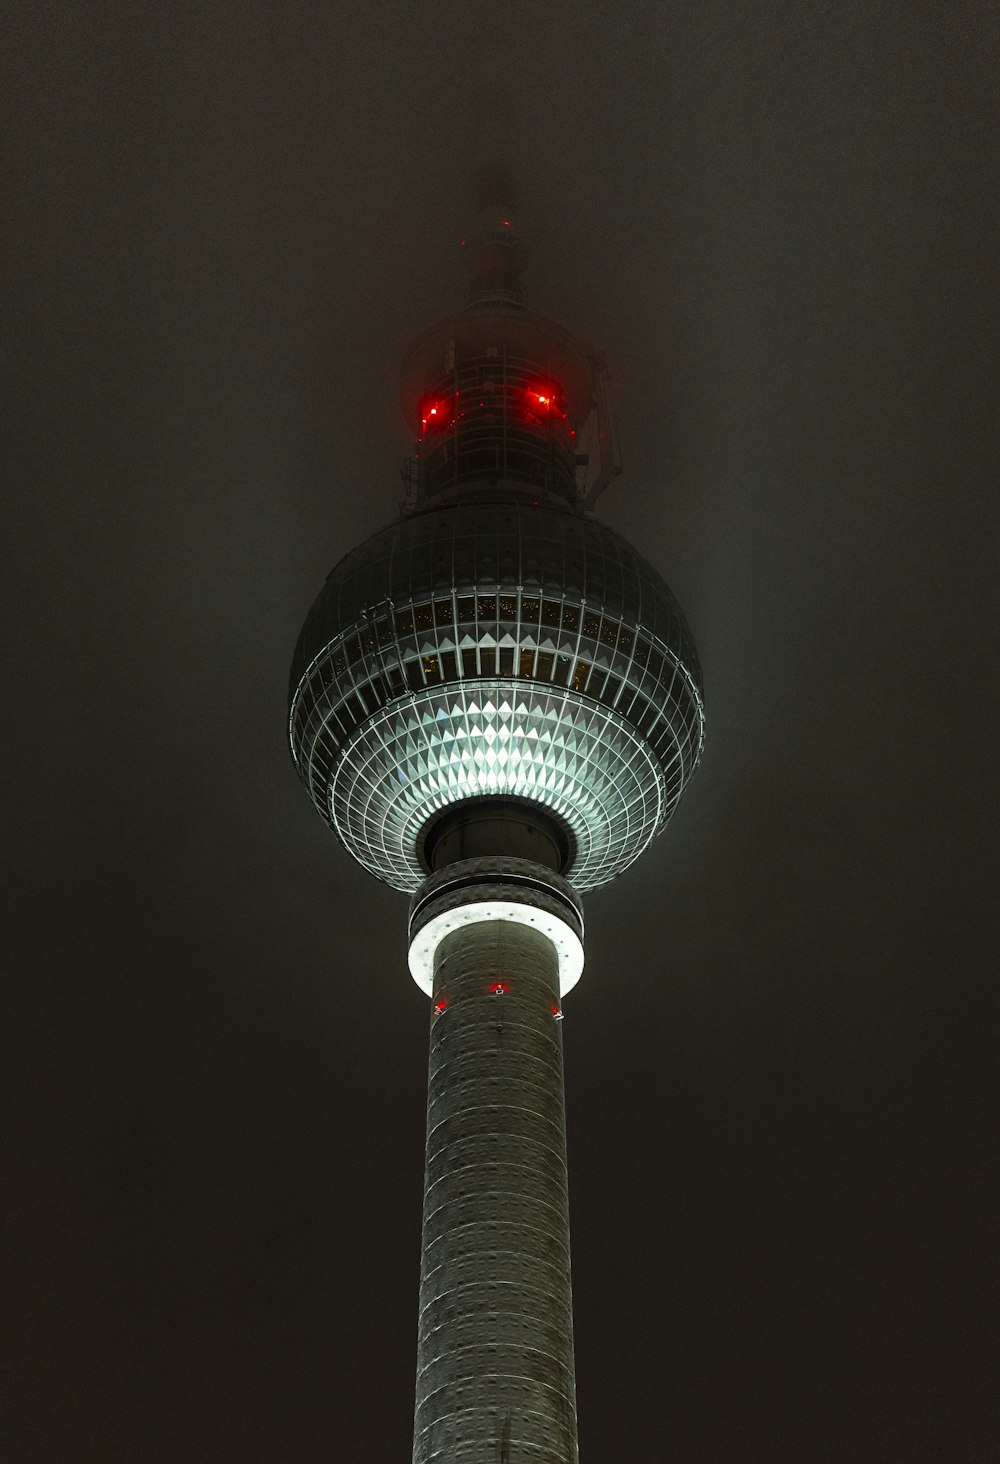 その上に赤いライトがついた高い塔